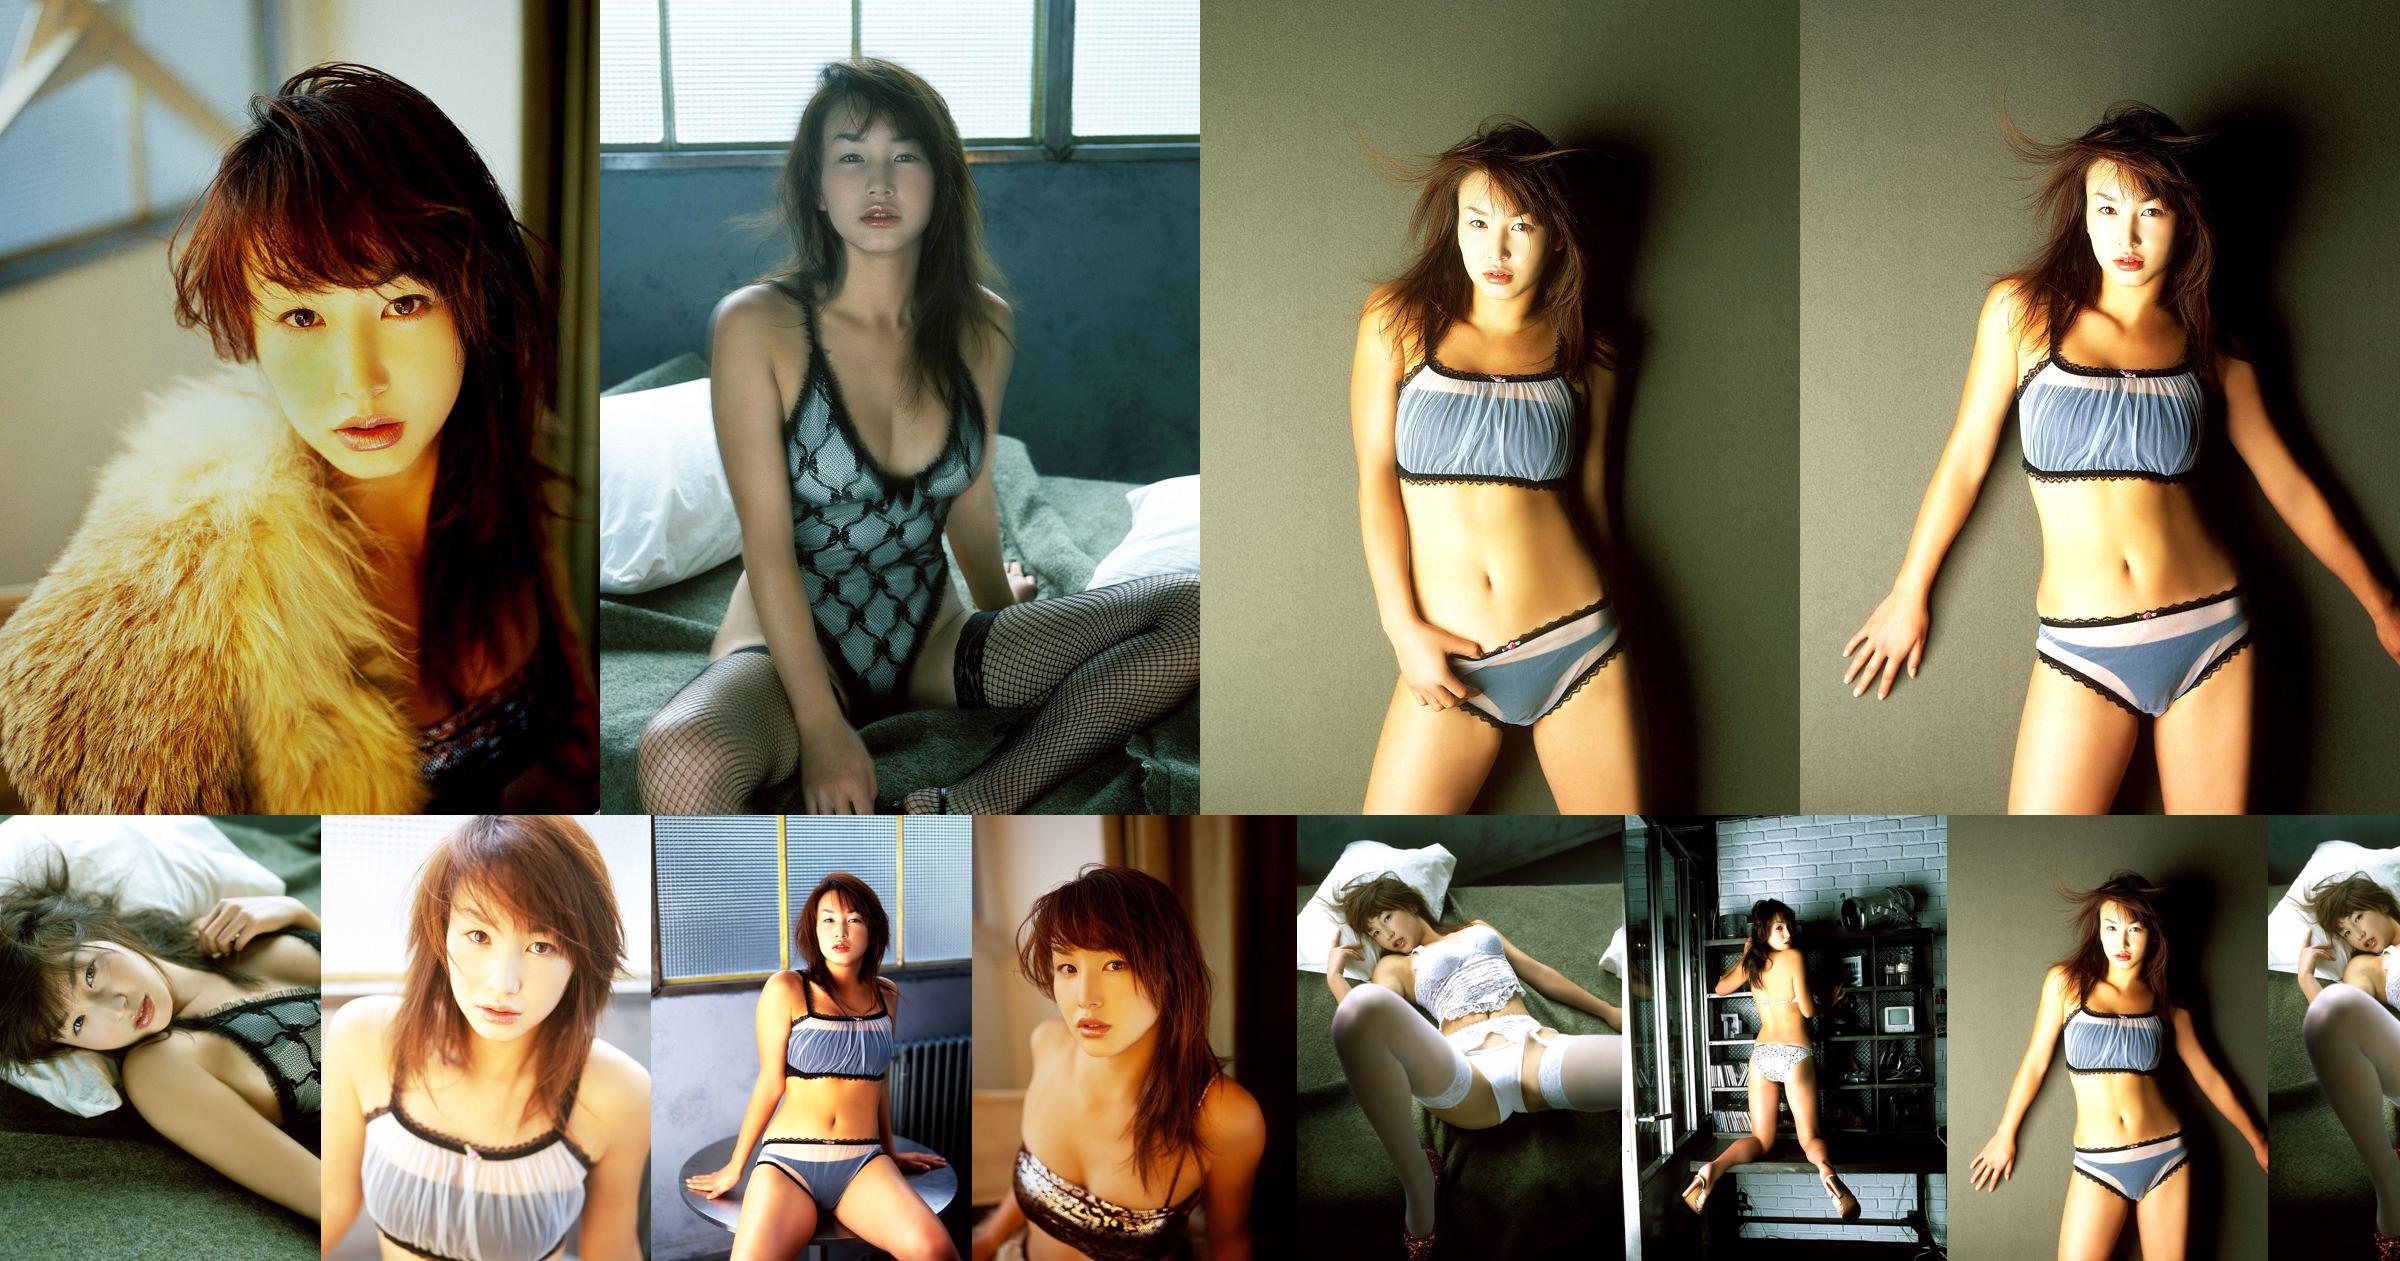 [X-City] Dokkiri Queen No.016 Momo Nakamura / Momo Nakamura Profil No.f67e3d Strona 1